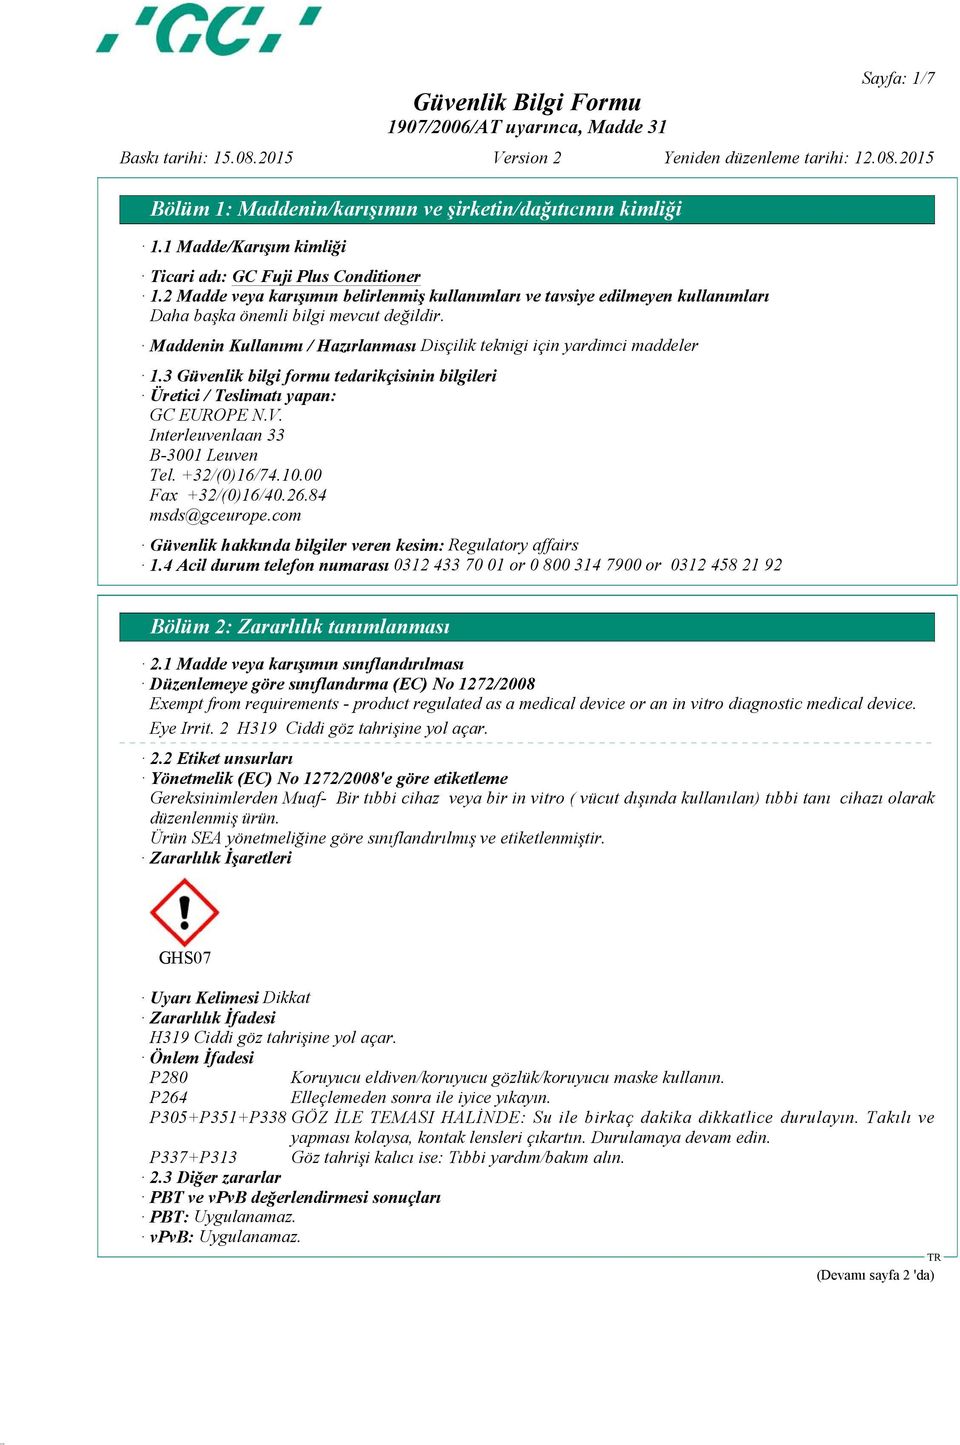 3 Güvenlik bilgi formu tedarikçisinin bilgileri Üretici / Teslimatı yapan: GC EUROPE N.V. Interleuvenlaan 33 B-3001 Leuven Tel. +32/(0)16/74.10.00 Fax +32/(0)16/40.26.84 msds@gceurope.